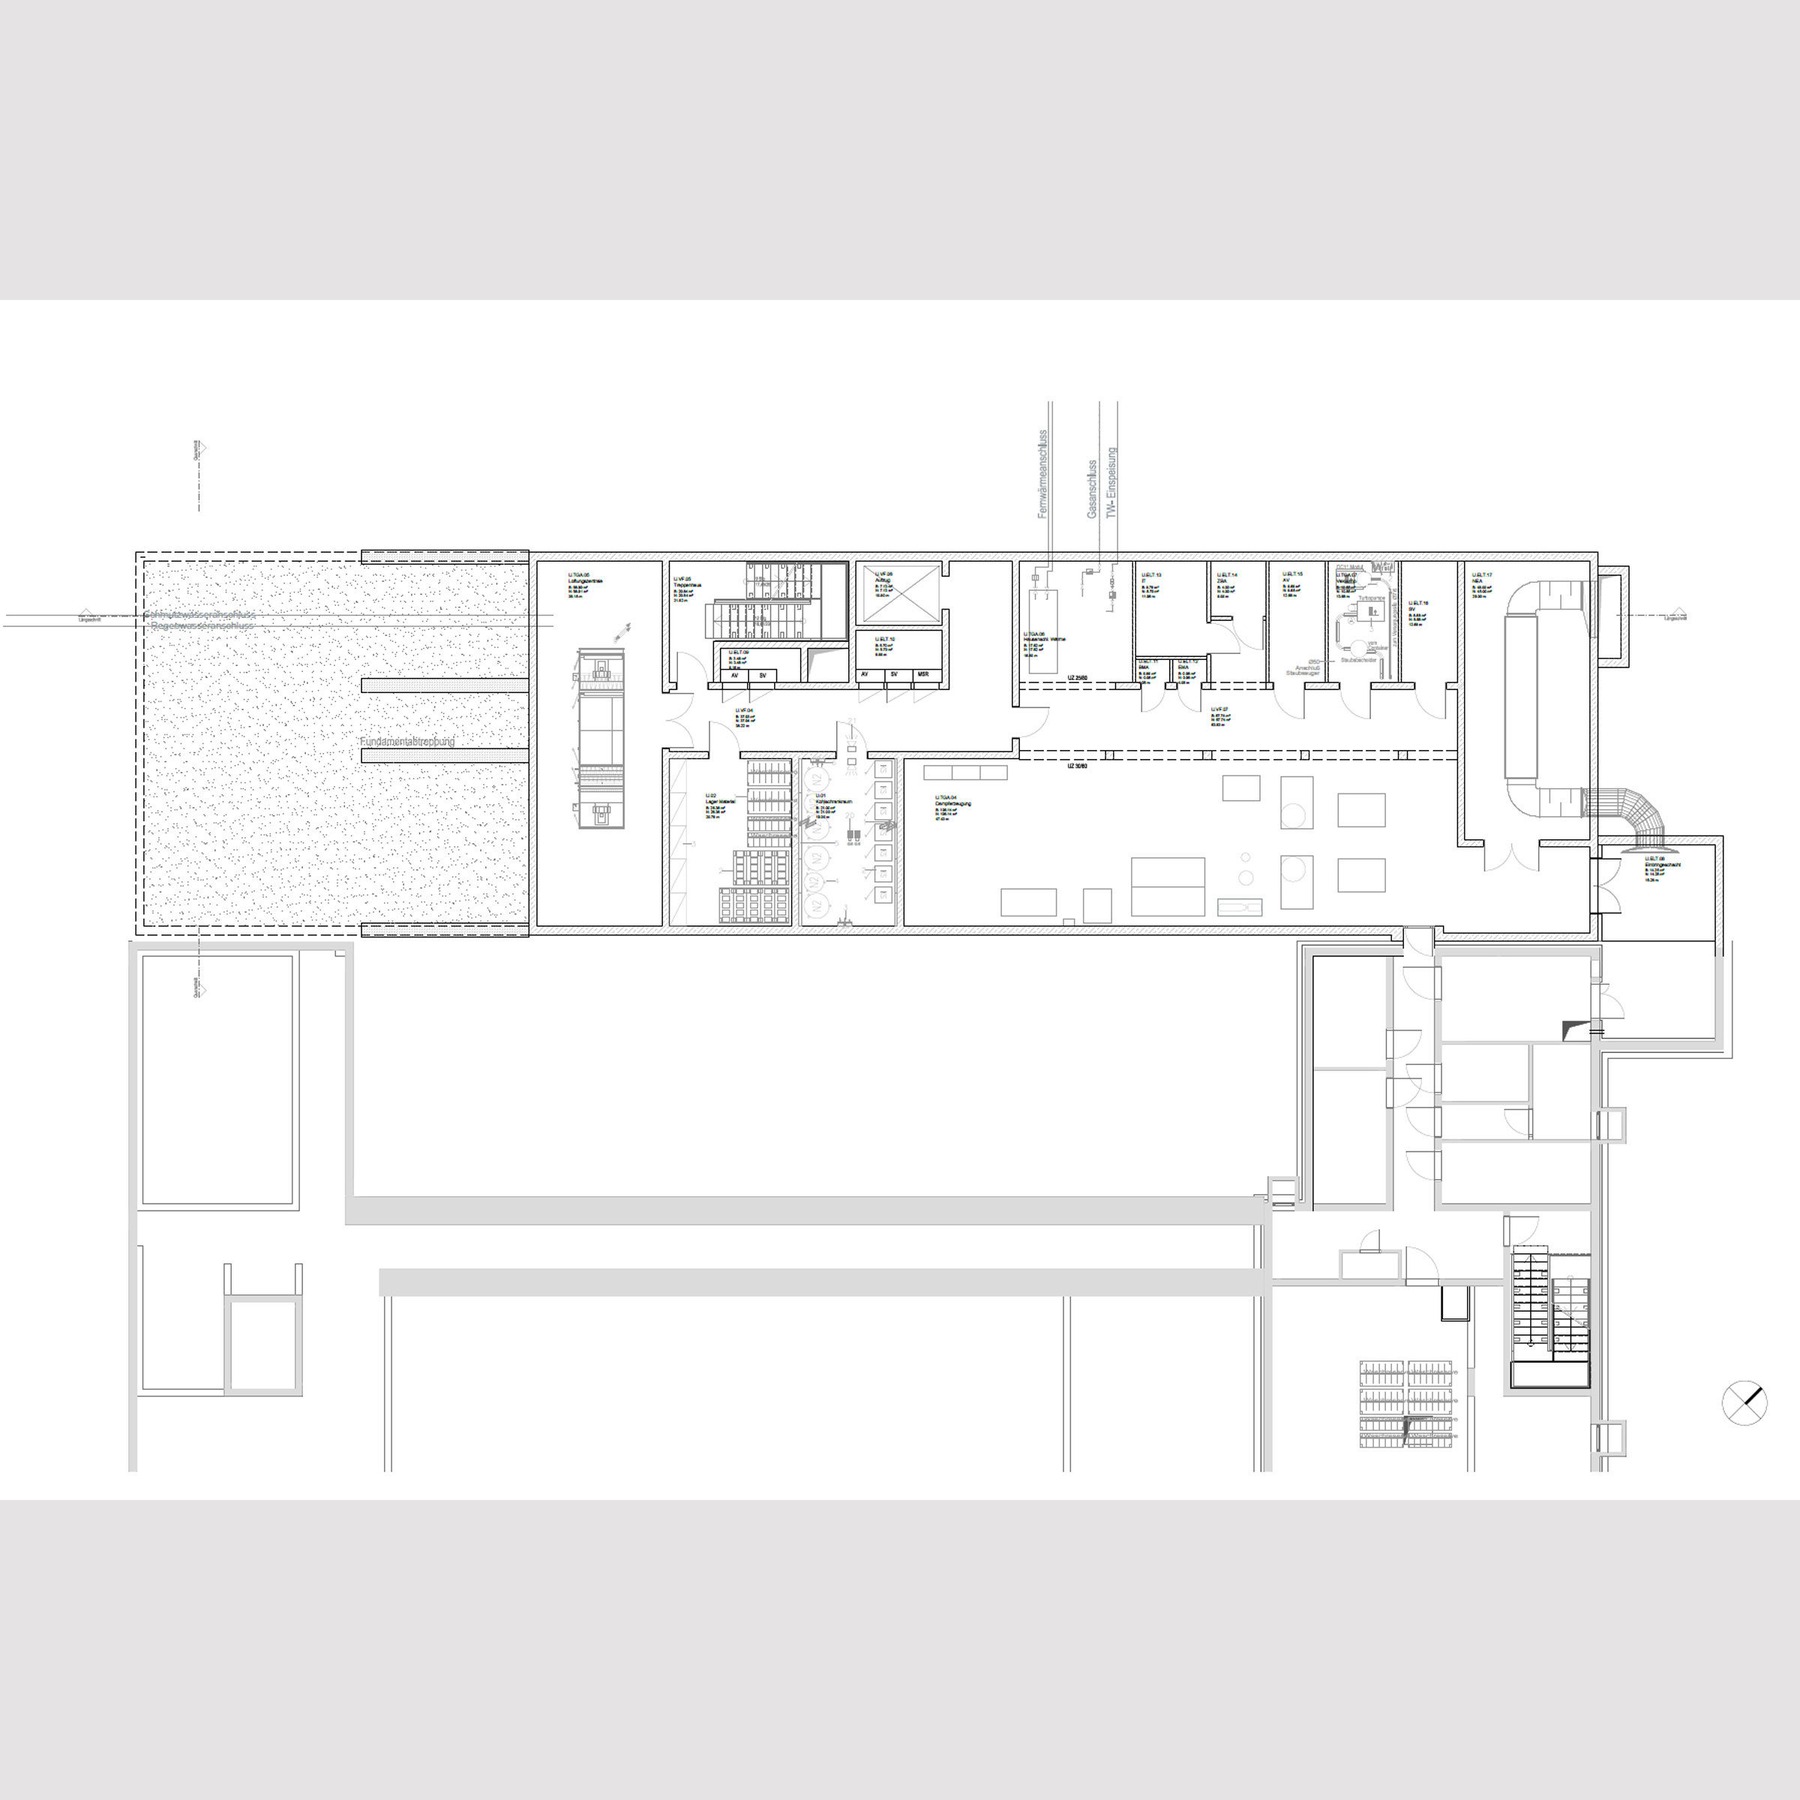 Grundriss Untergeschoss © 2017 tönis + schroeter + jansen freie architekten gmbh, Lübeck